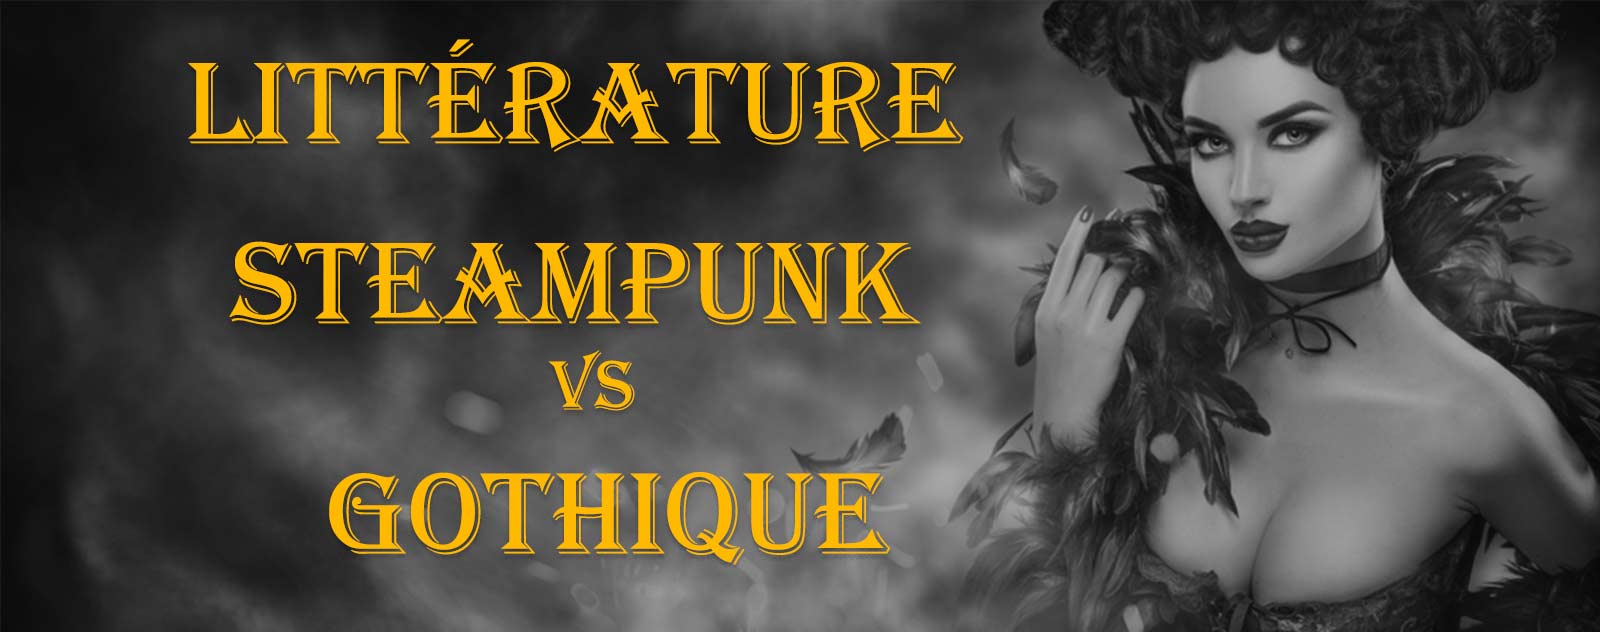 Littérature Steampunk vs gothique